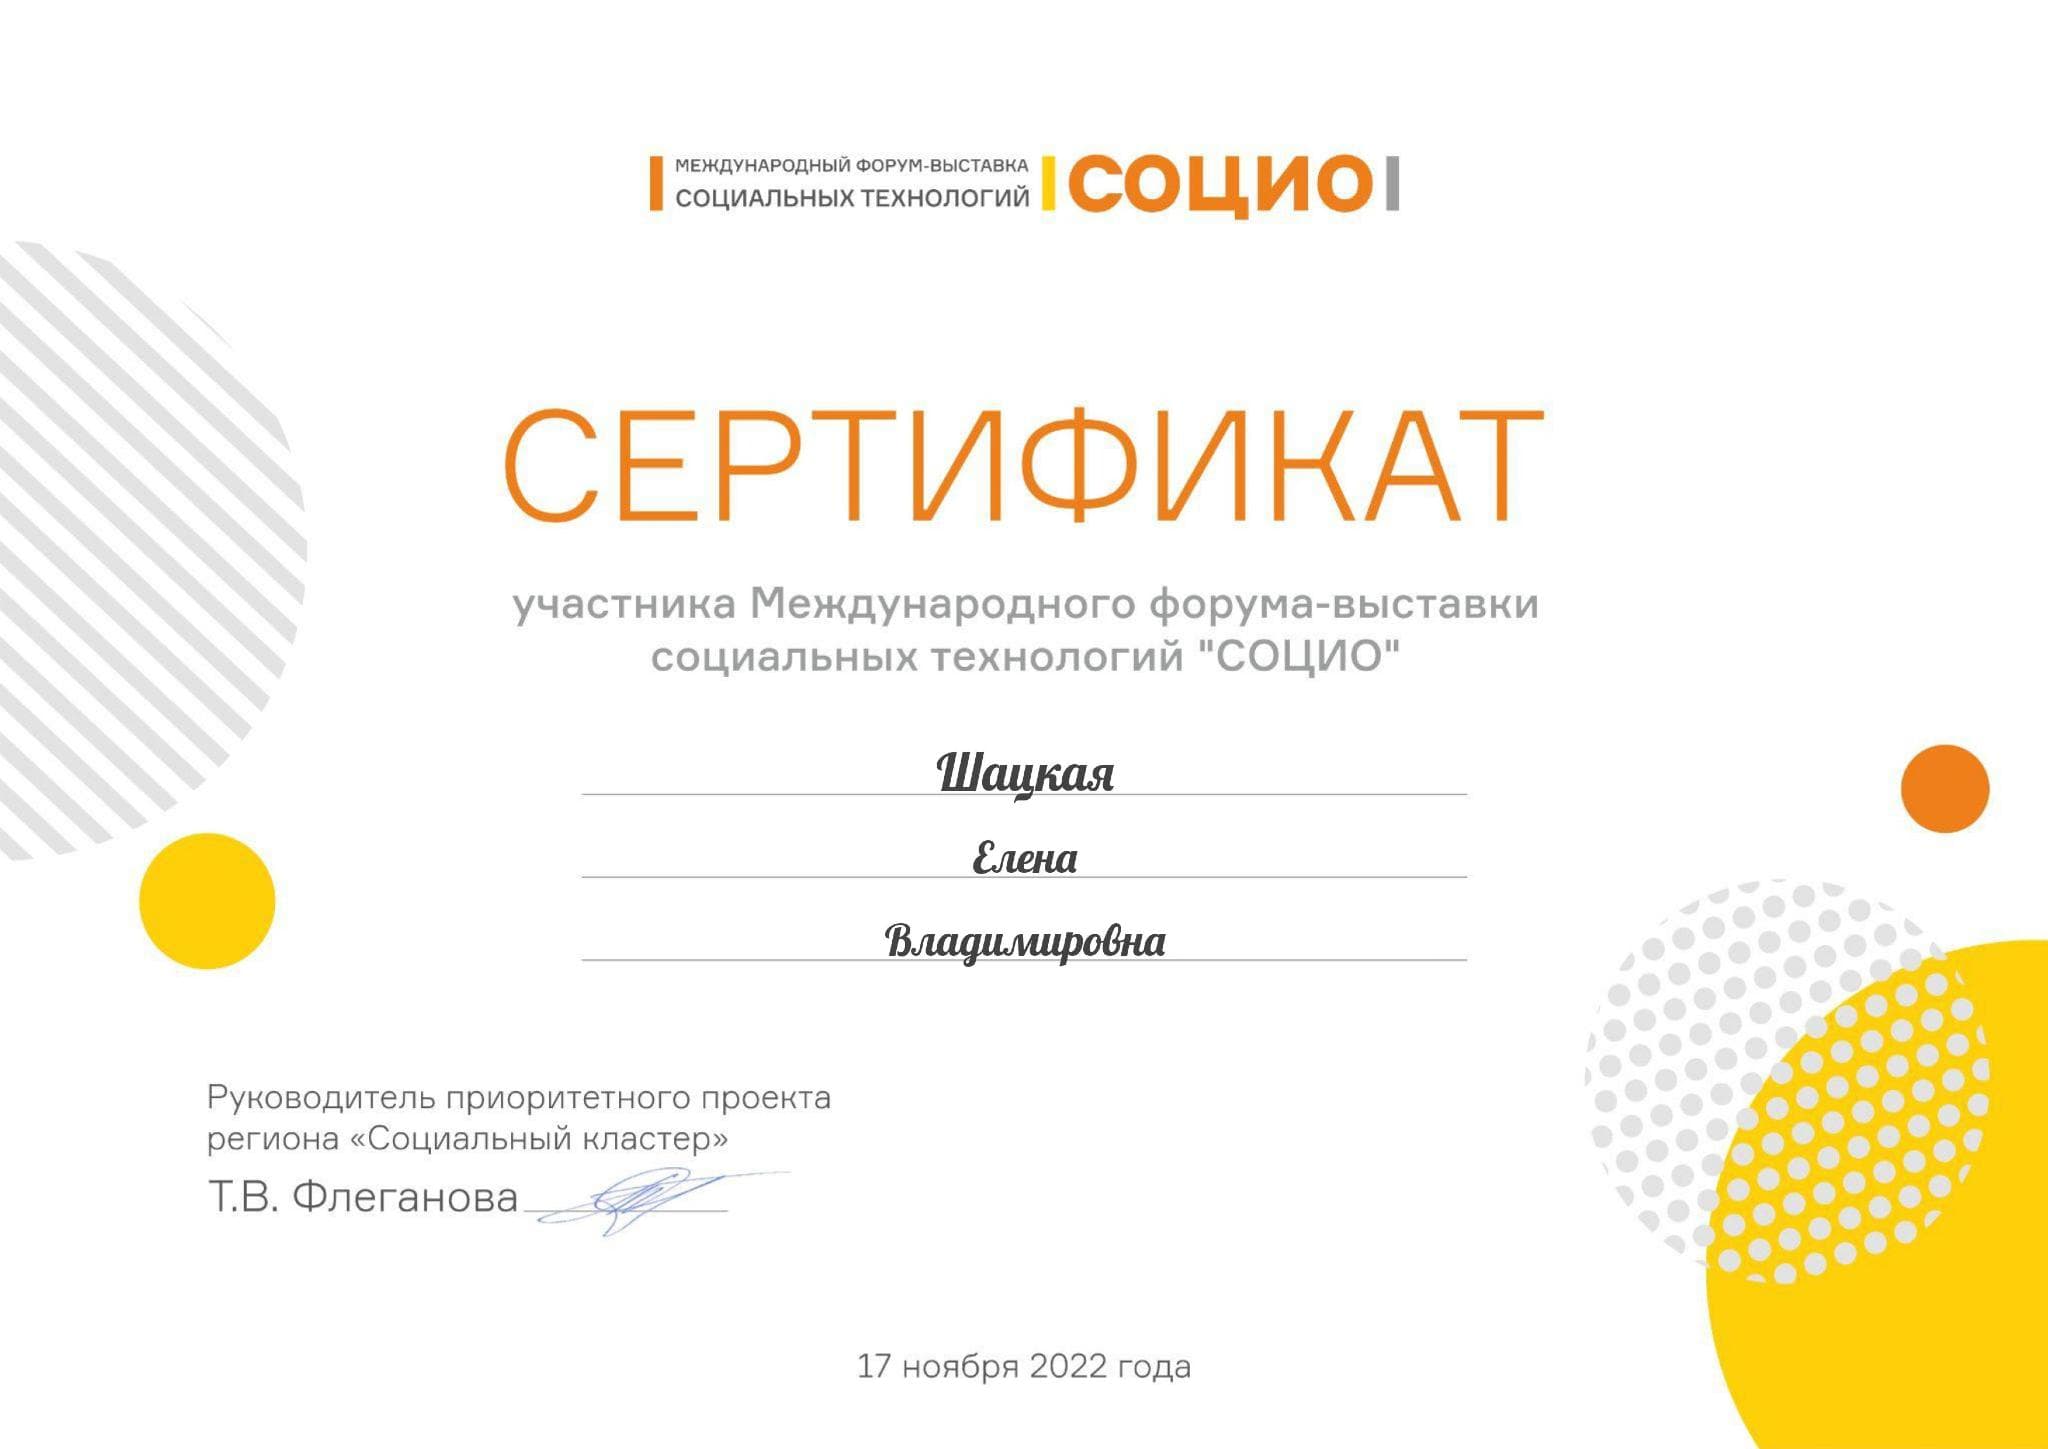 Сертификат участника на форуме-выставке «Социо»